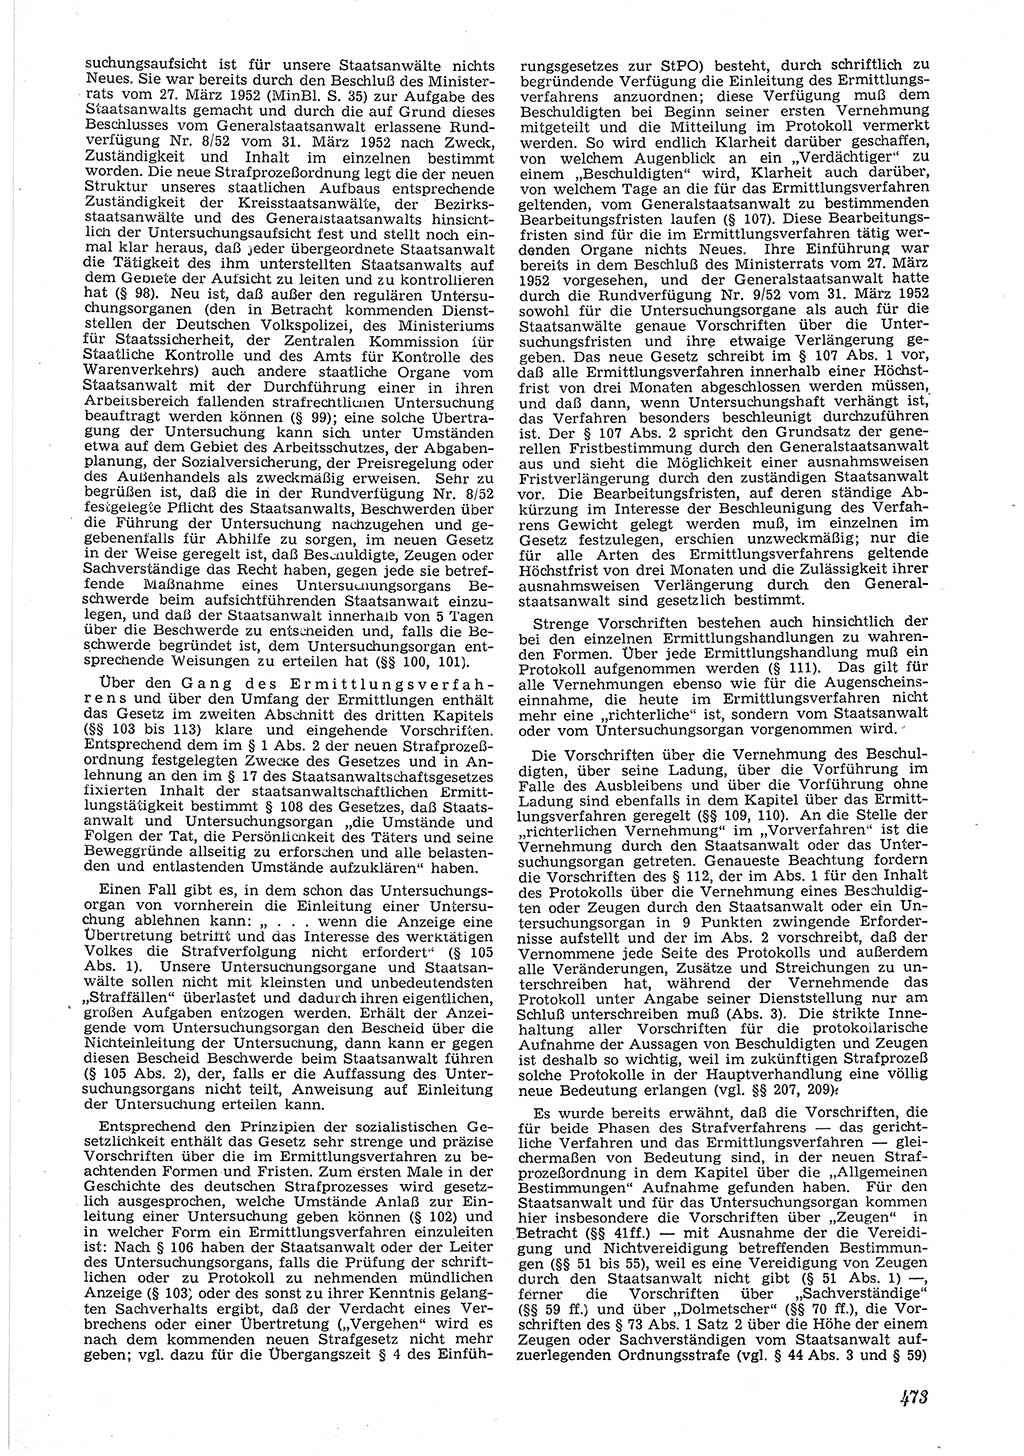 Neue Justiz (NJ), Zeitschrift für Recht und Rechtswissenschaft [Deutsche Demokratische Republik (DDR)], 6. Jahrgang 1952, Seite 473 (NJ DDR 1952, S. 473)